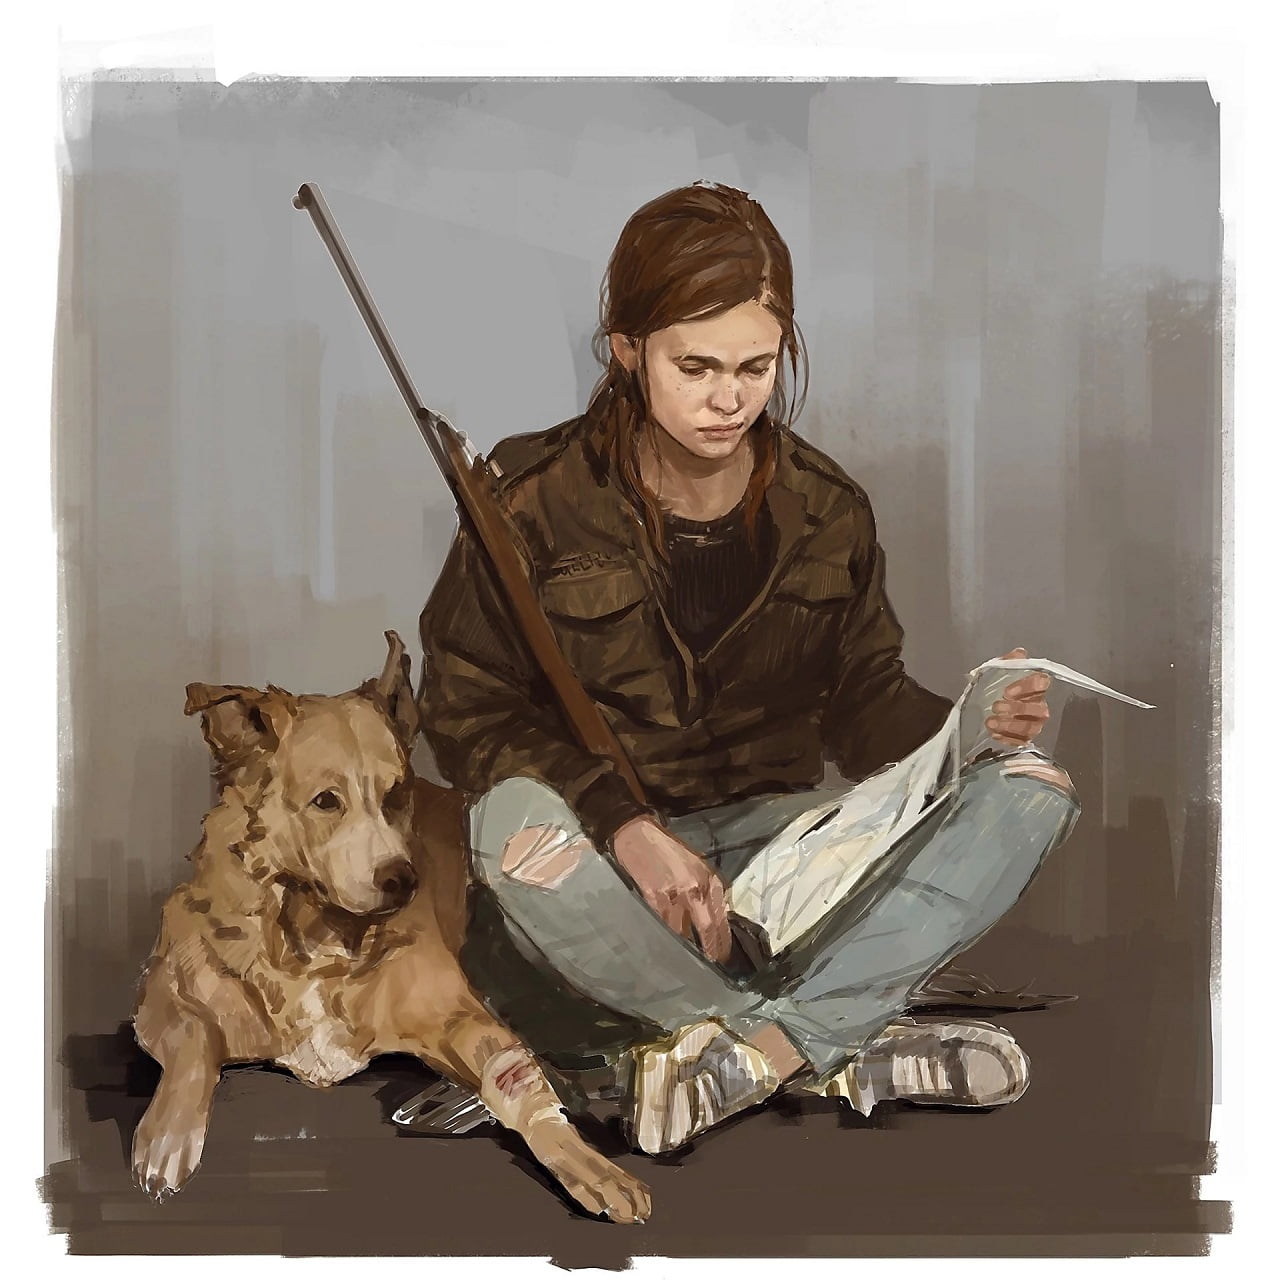 Arte conceituais The Last of Us 2 mostram mais de Ellie 1